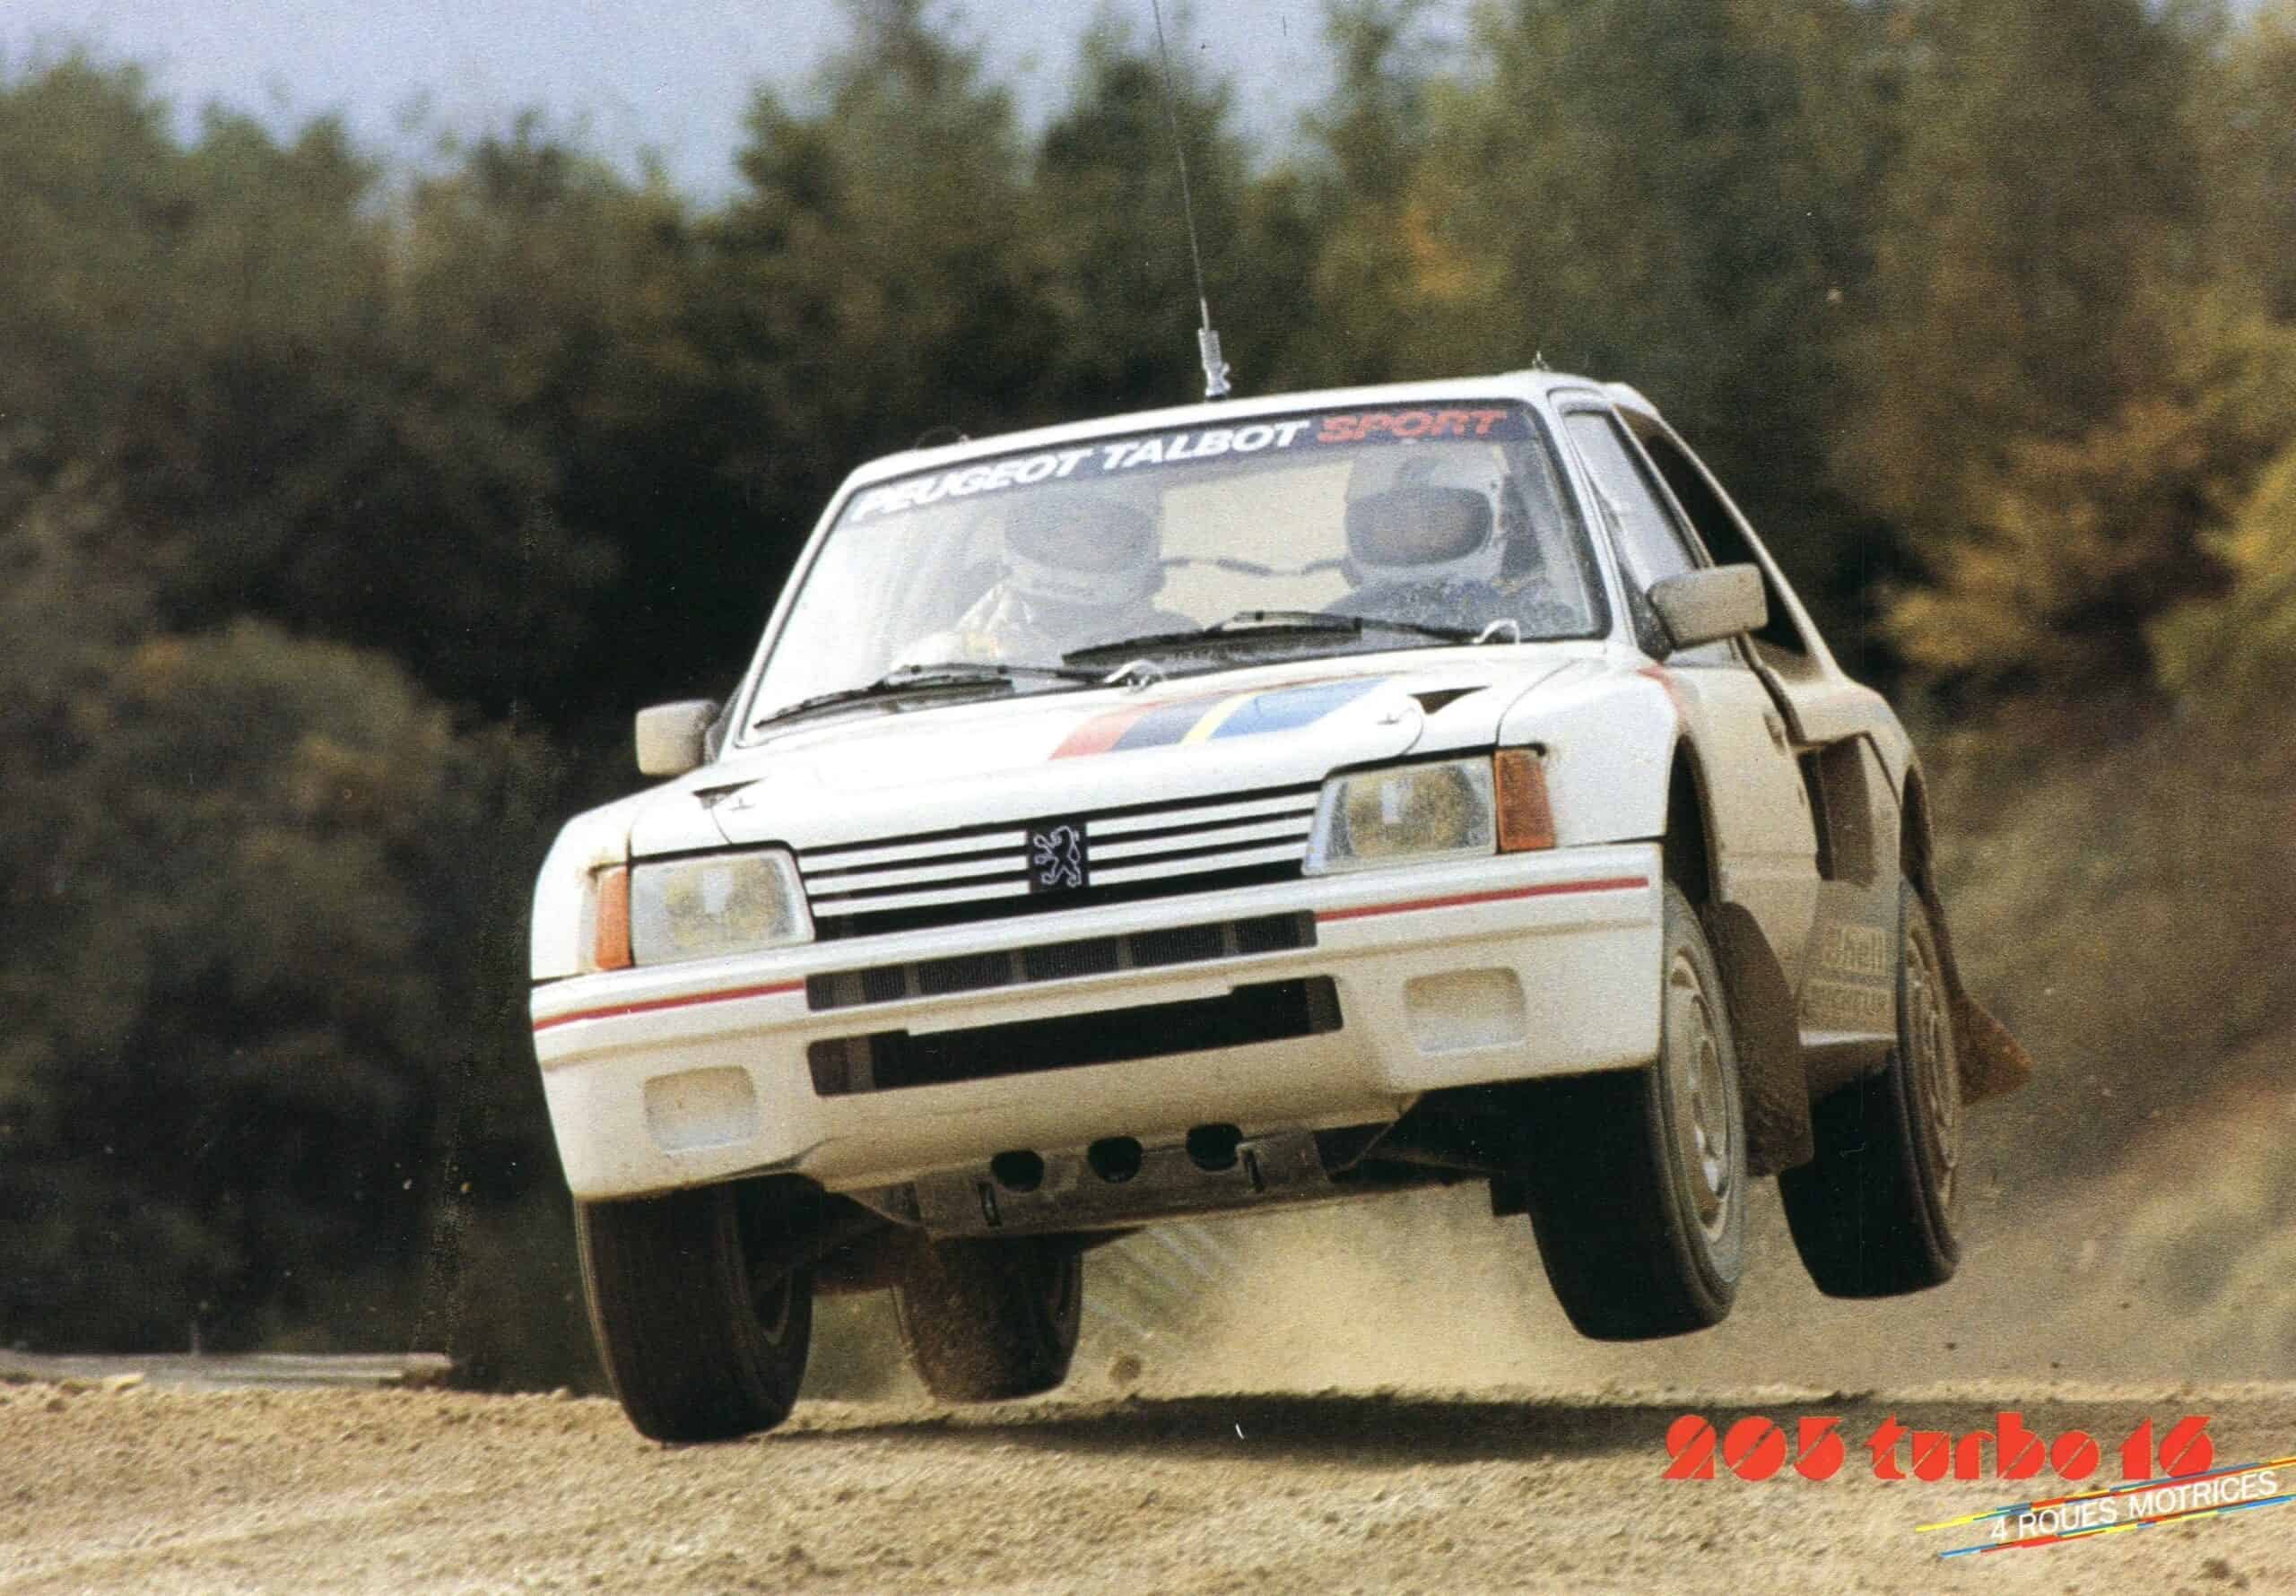 Peugeot 205 Turbo 16 T16 40 ans ici en 1986 en WRC avec Juha Kankkunen champion du monde des rallyes et vainqueur de l'épreuve Mondial de l'Auto 2024